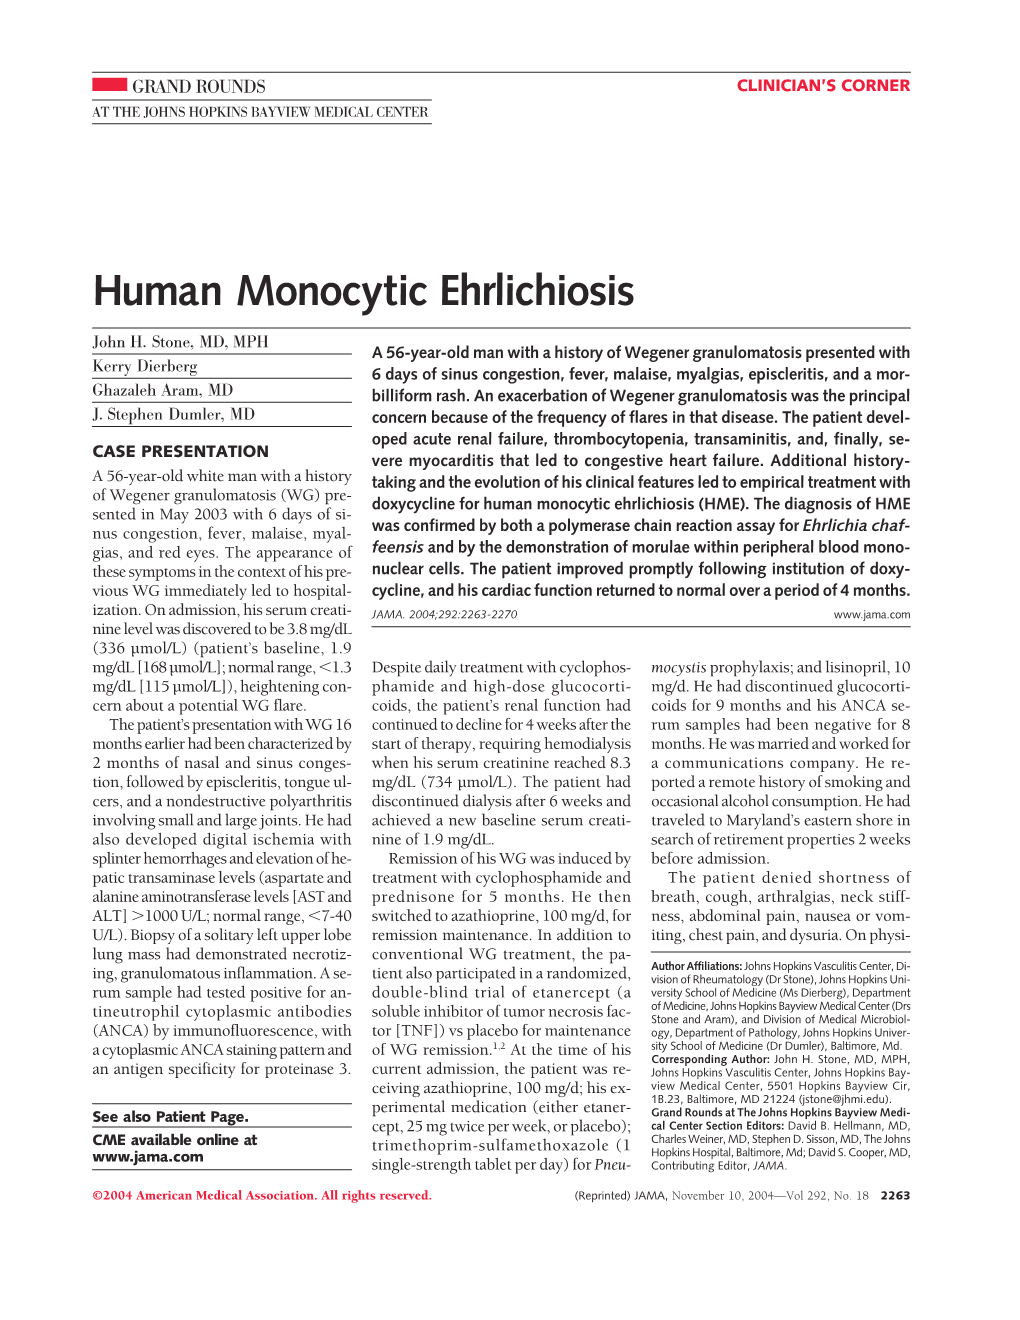 Human Monocytic Ehrlichiosis